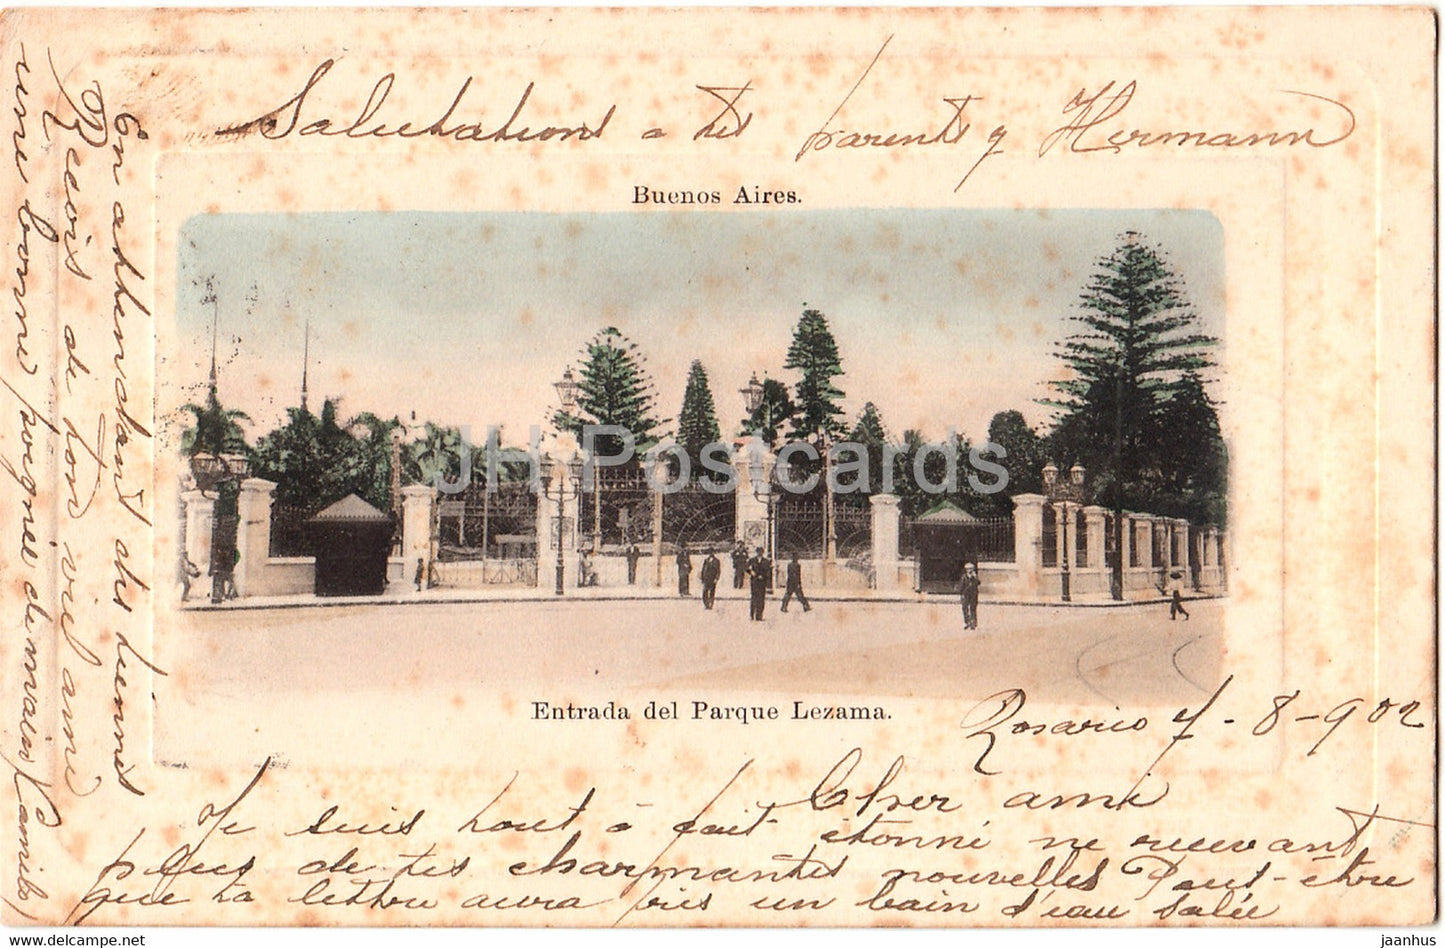 Buenos Aires - Entrada del Parque Lezama - old postcard - 1902 - Argentina - used - JH Postcards